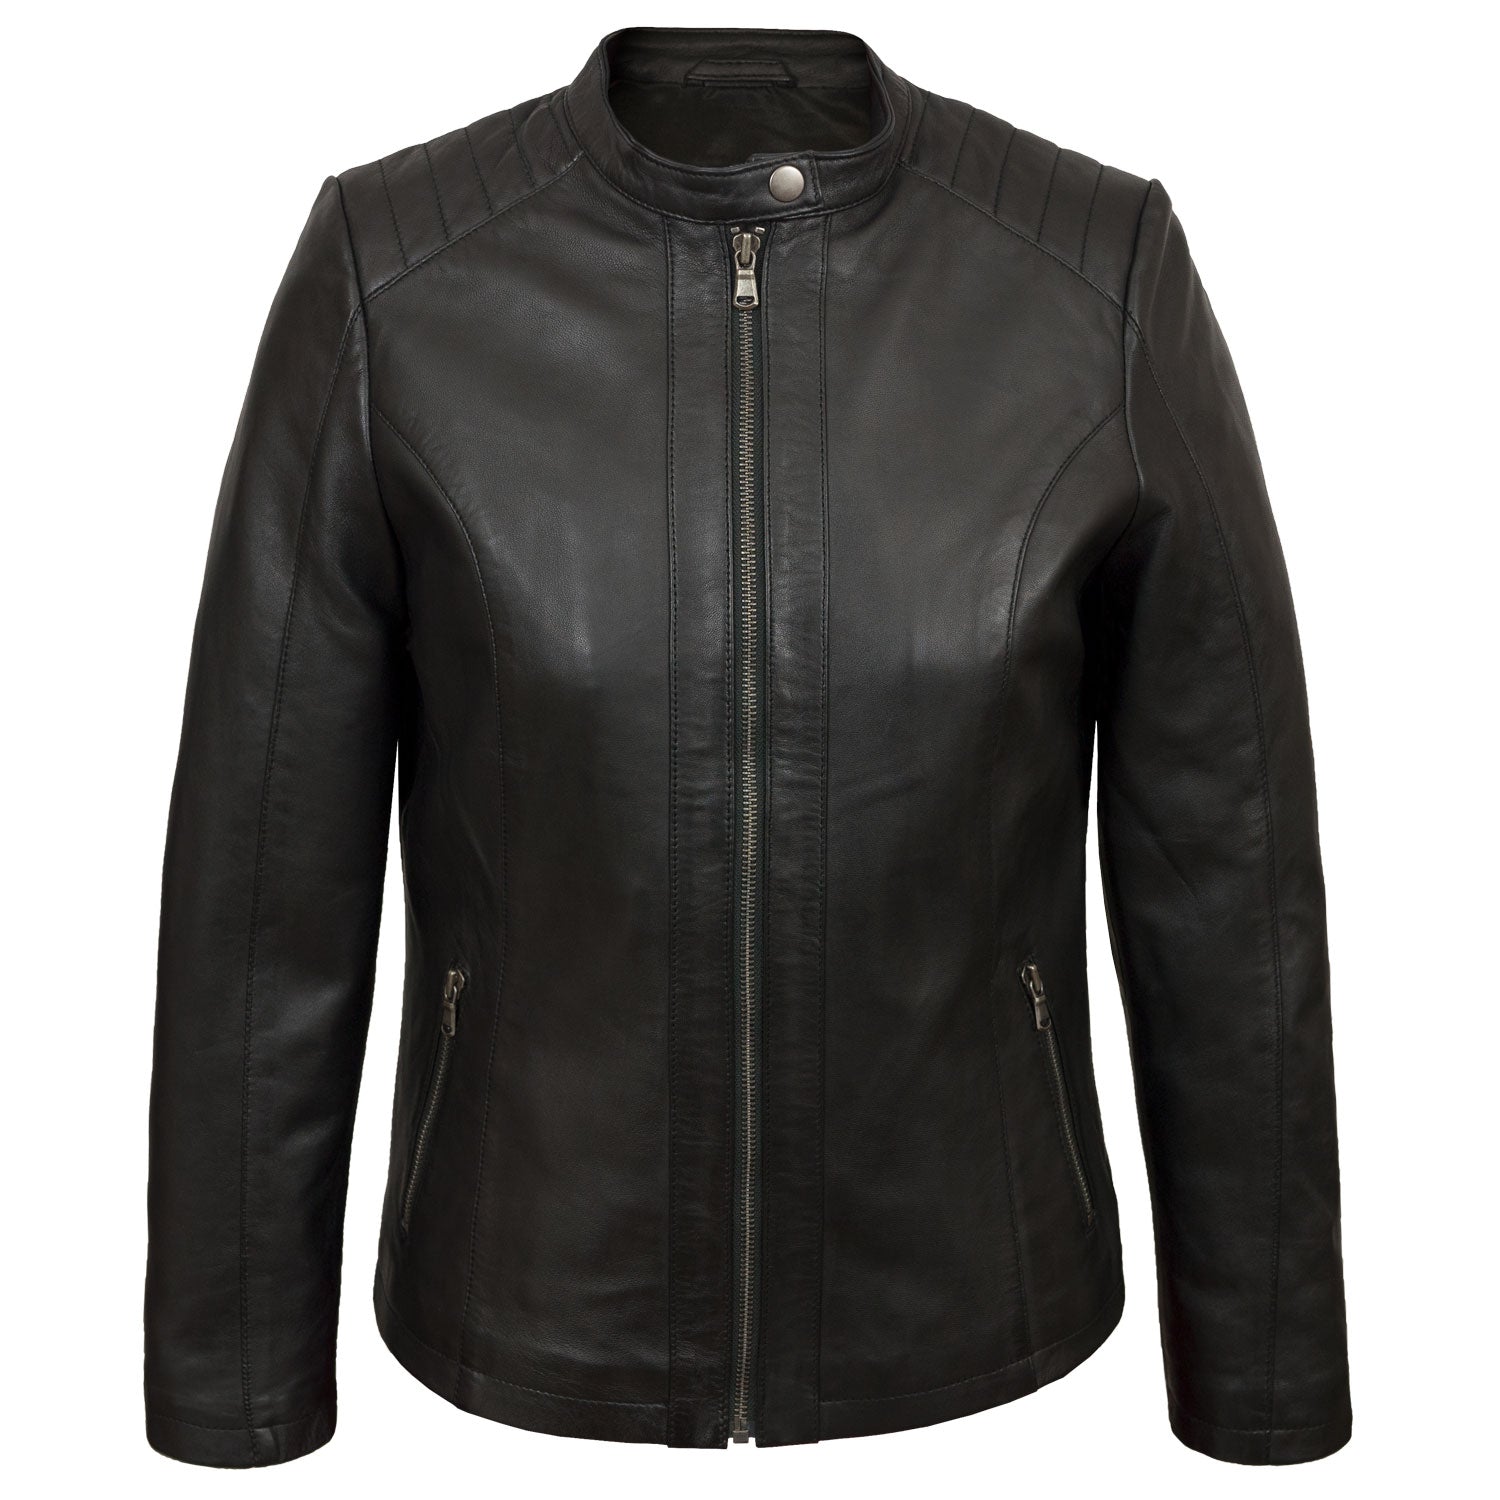 Trudy: Women's Black Leather Biker Jacket